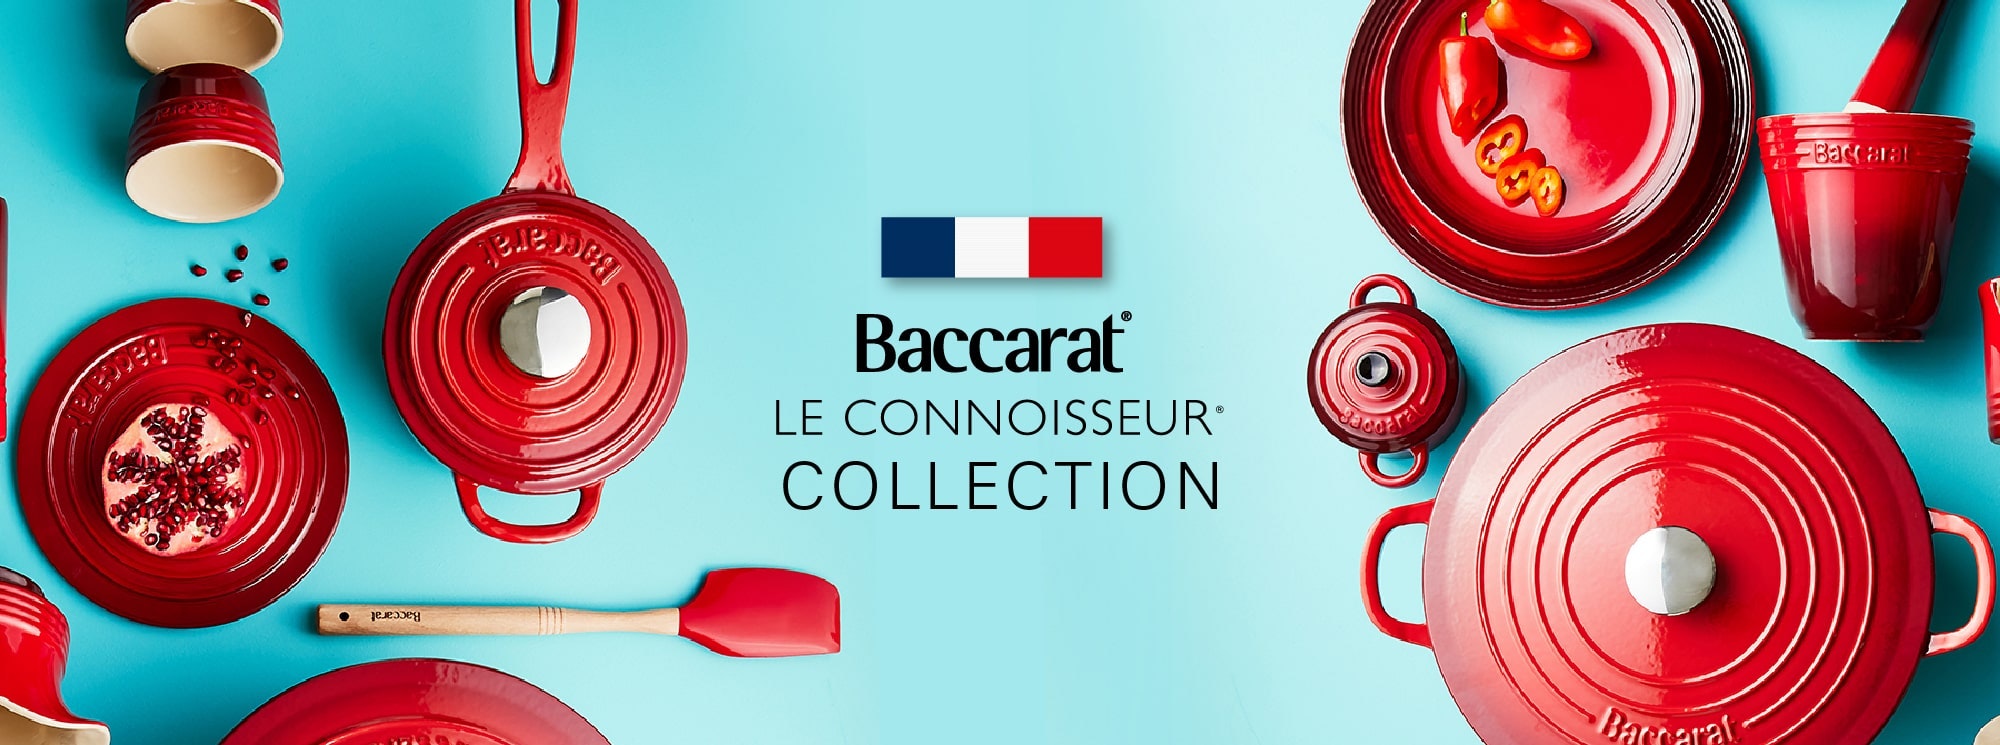 Baccarat Le Connoisseur Collection